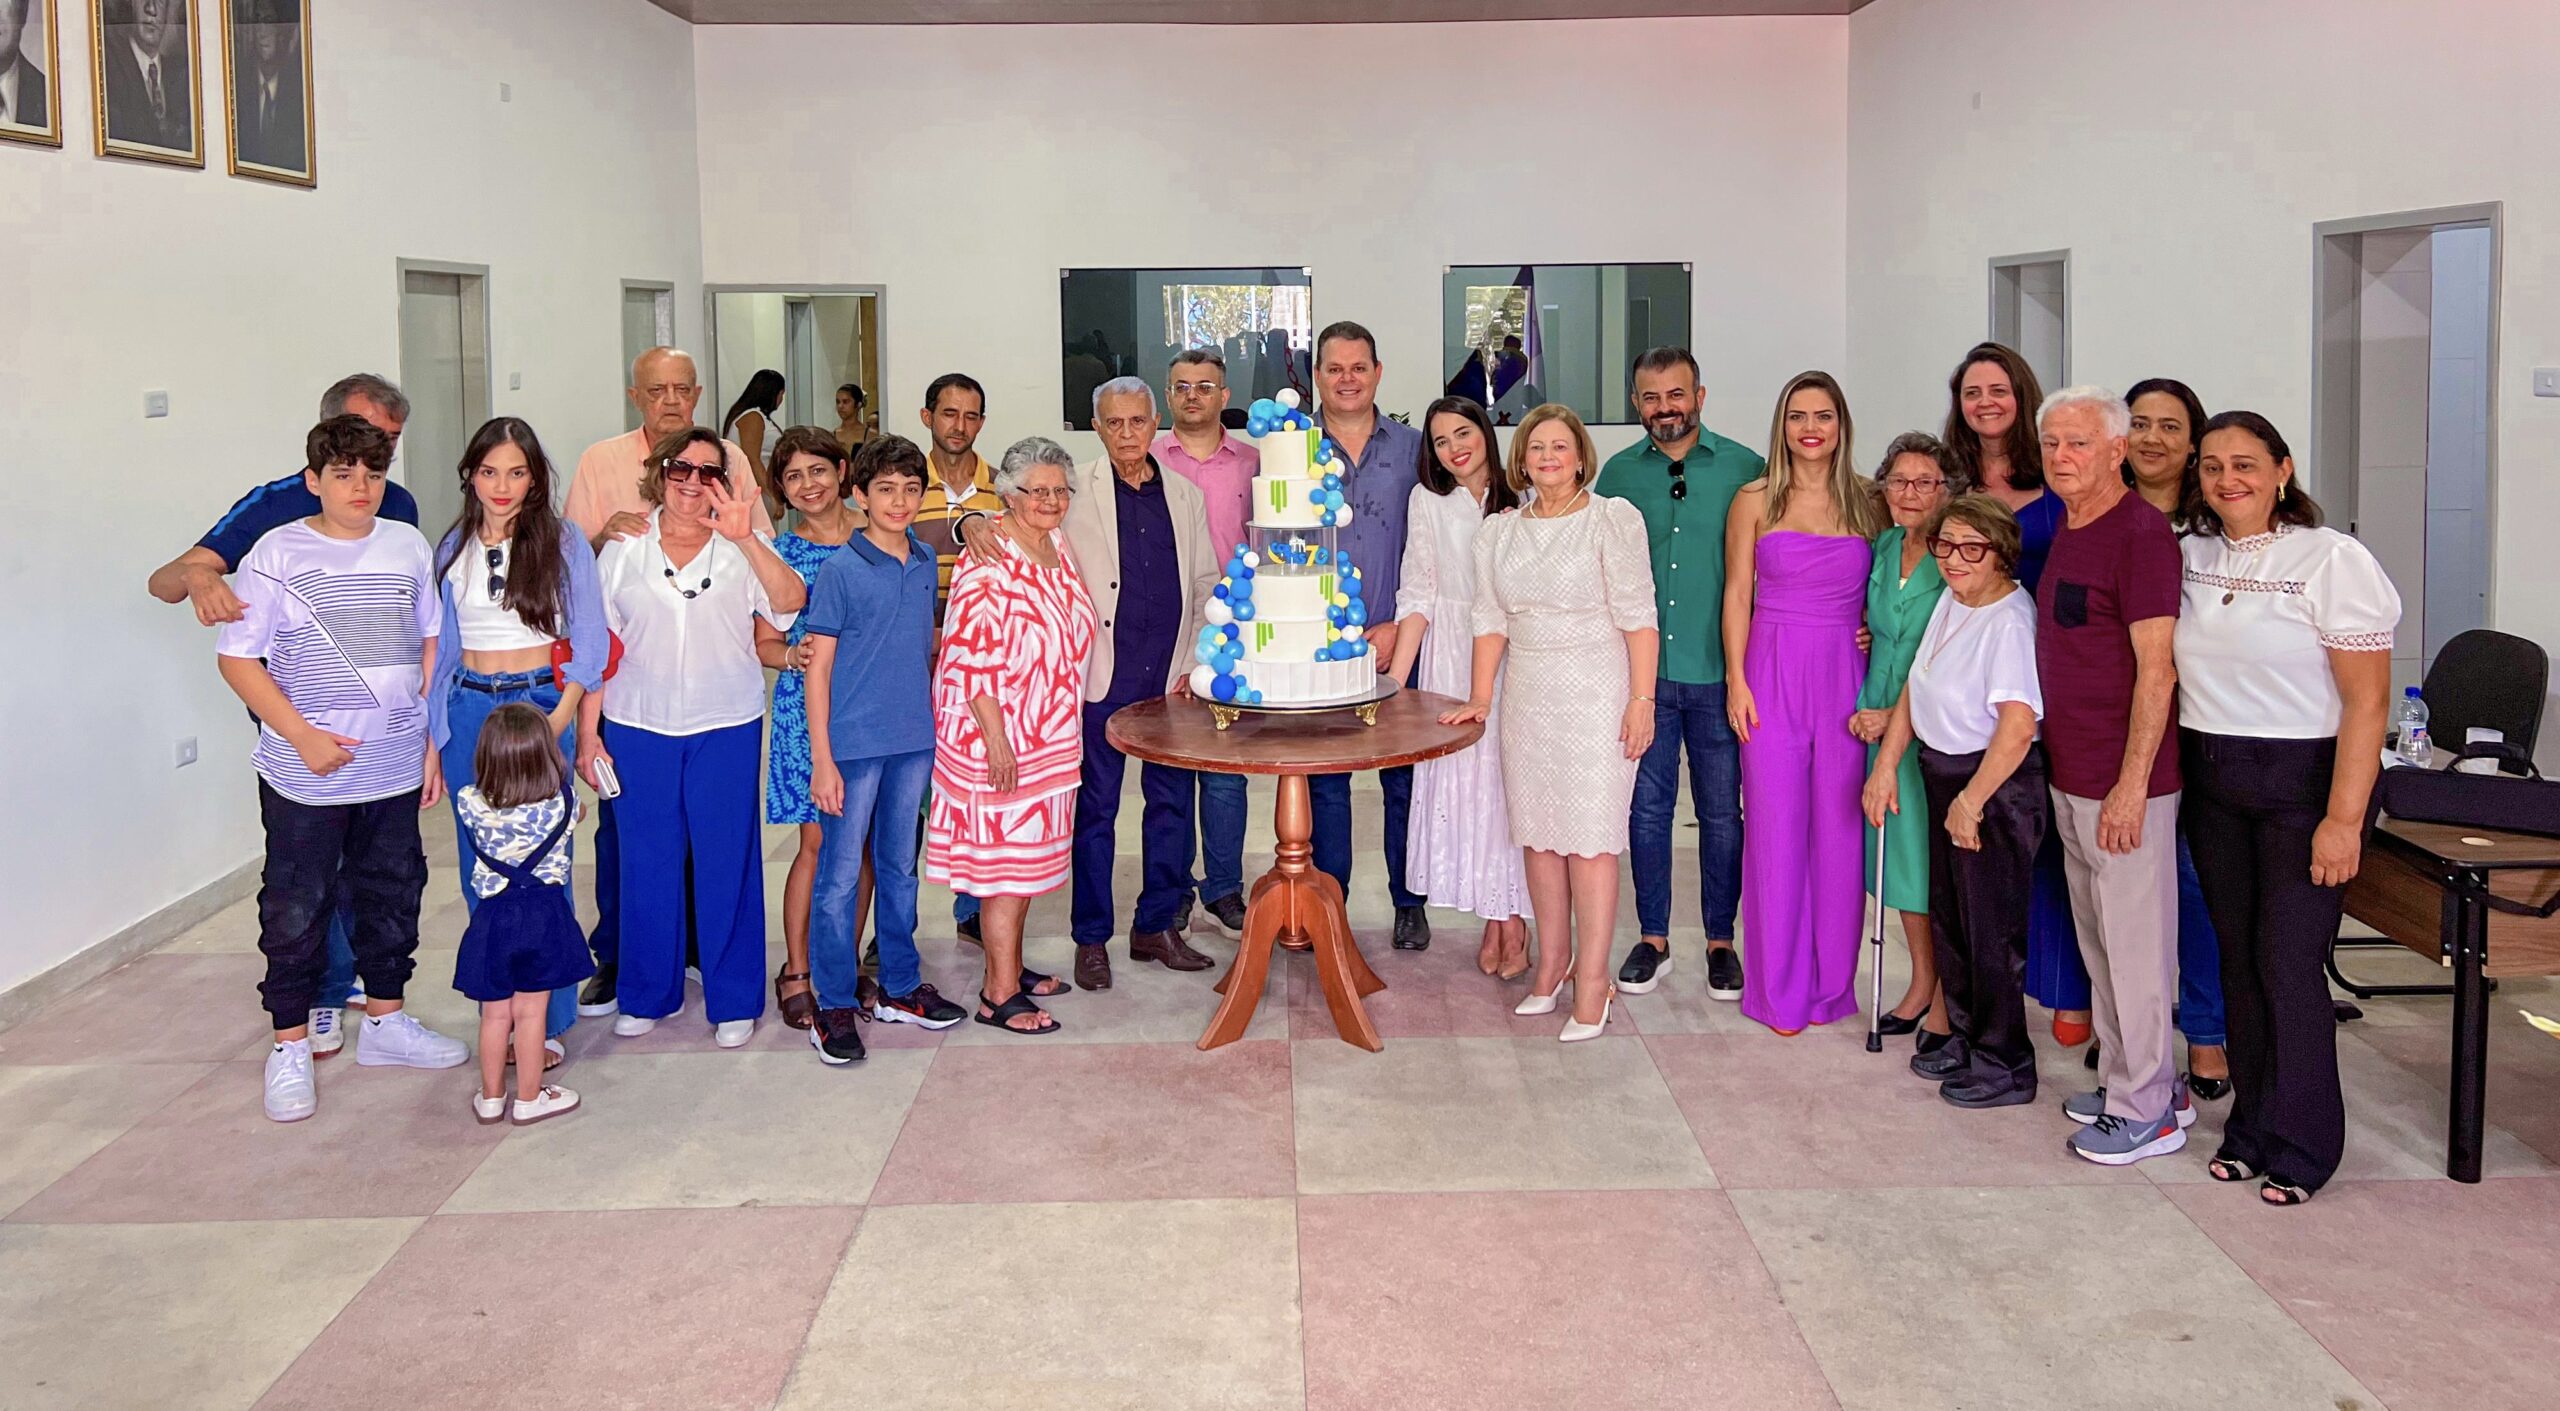 Franz Hacker prestigia ao lado da prefeita Fátima Borba as comemorações dos 70 anos do município de Cortês